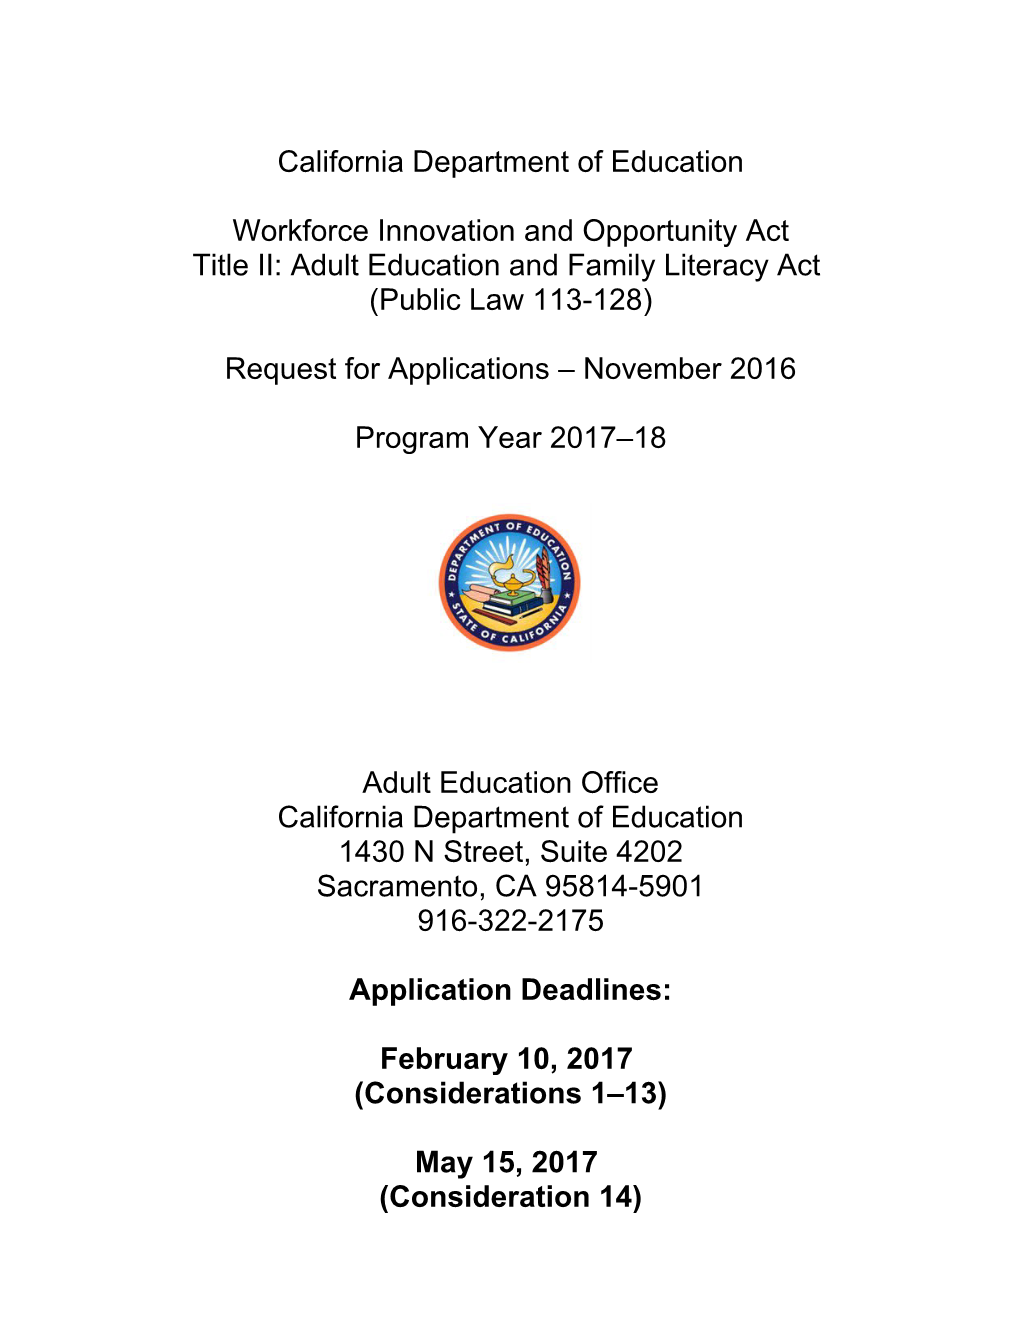 RFA-17: WIOA (CA Dept of Education)